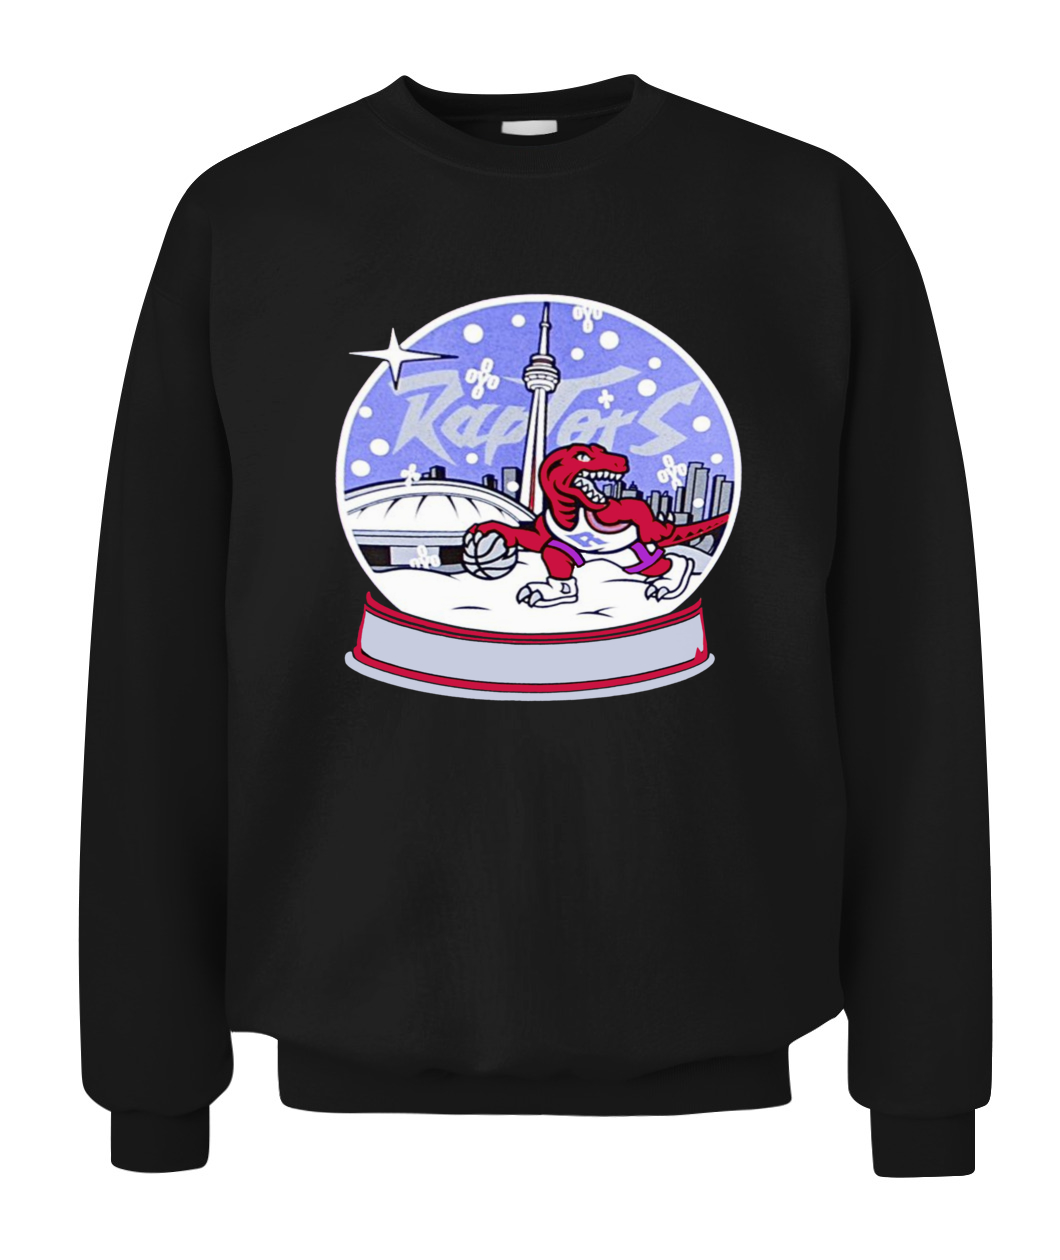 Toronto Raptors OVO 2019 Christmas Day Game Long sleeve shirt - L